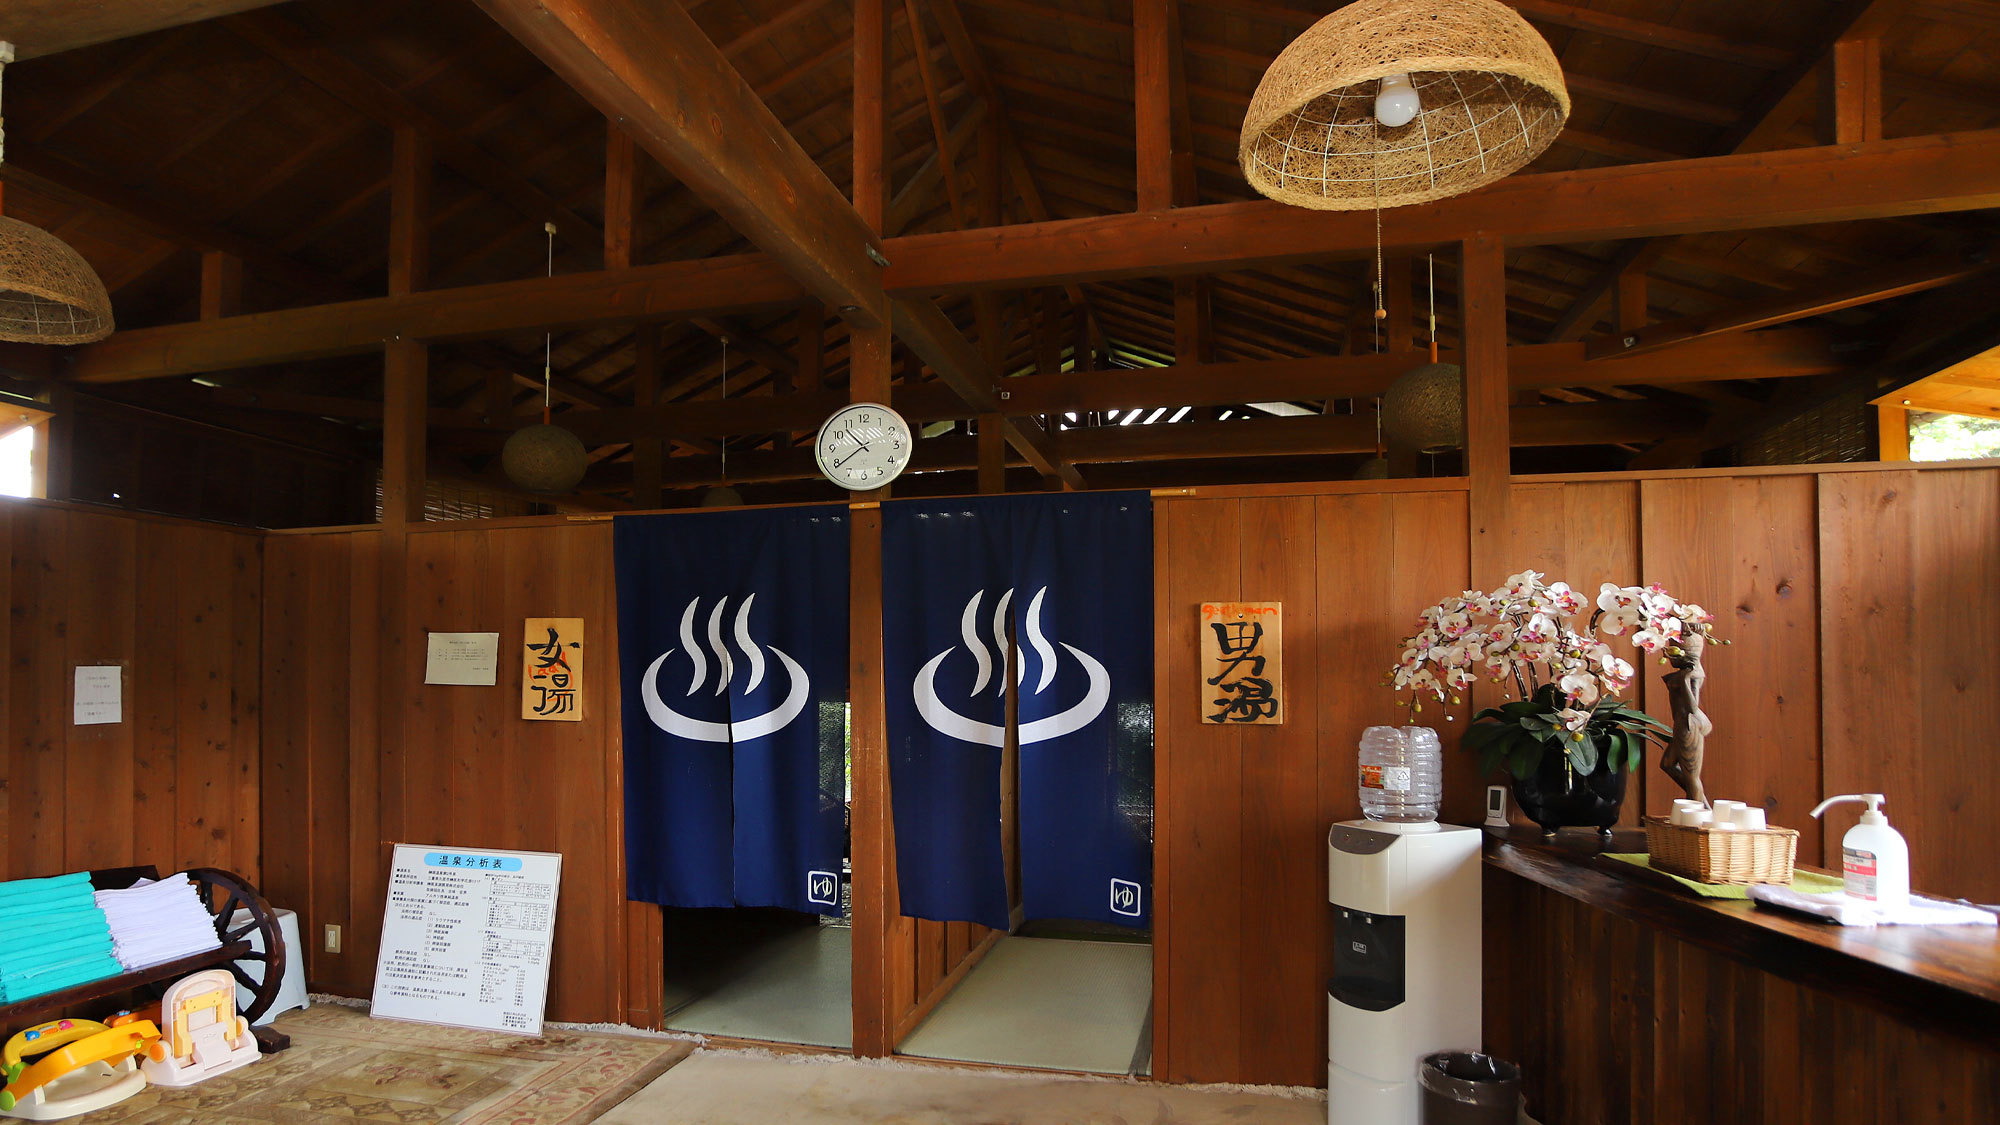 大浴場「夢湯」は客室露天風呂と同じく、名湯・榊原温泉を使用しています。貸切も対応可能。